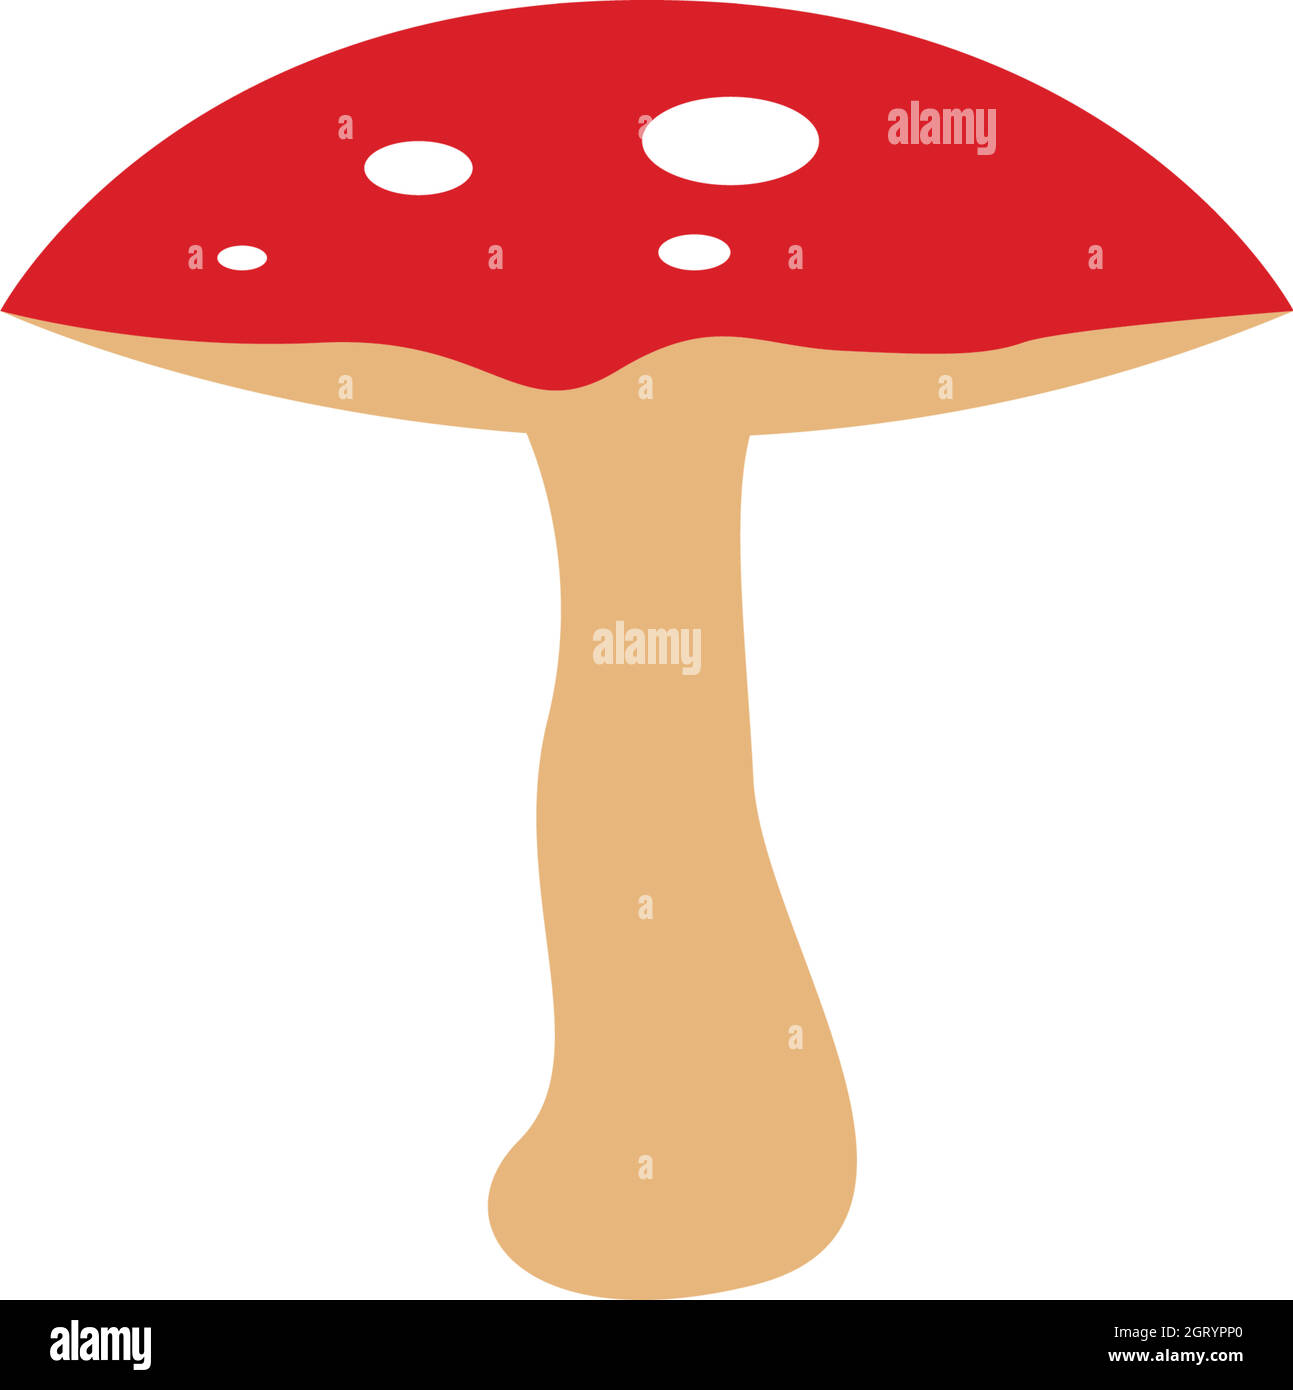 mushroom vector illustration icon design Stock Vector